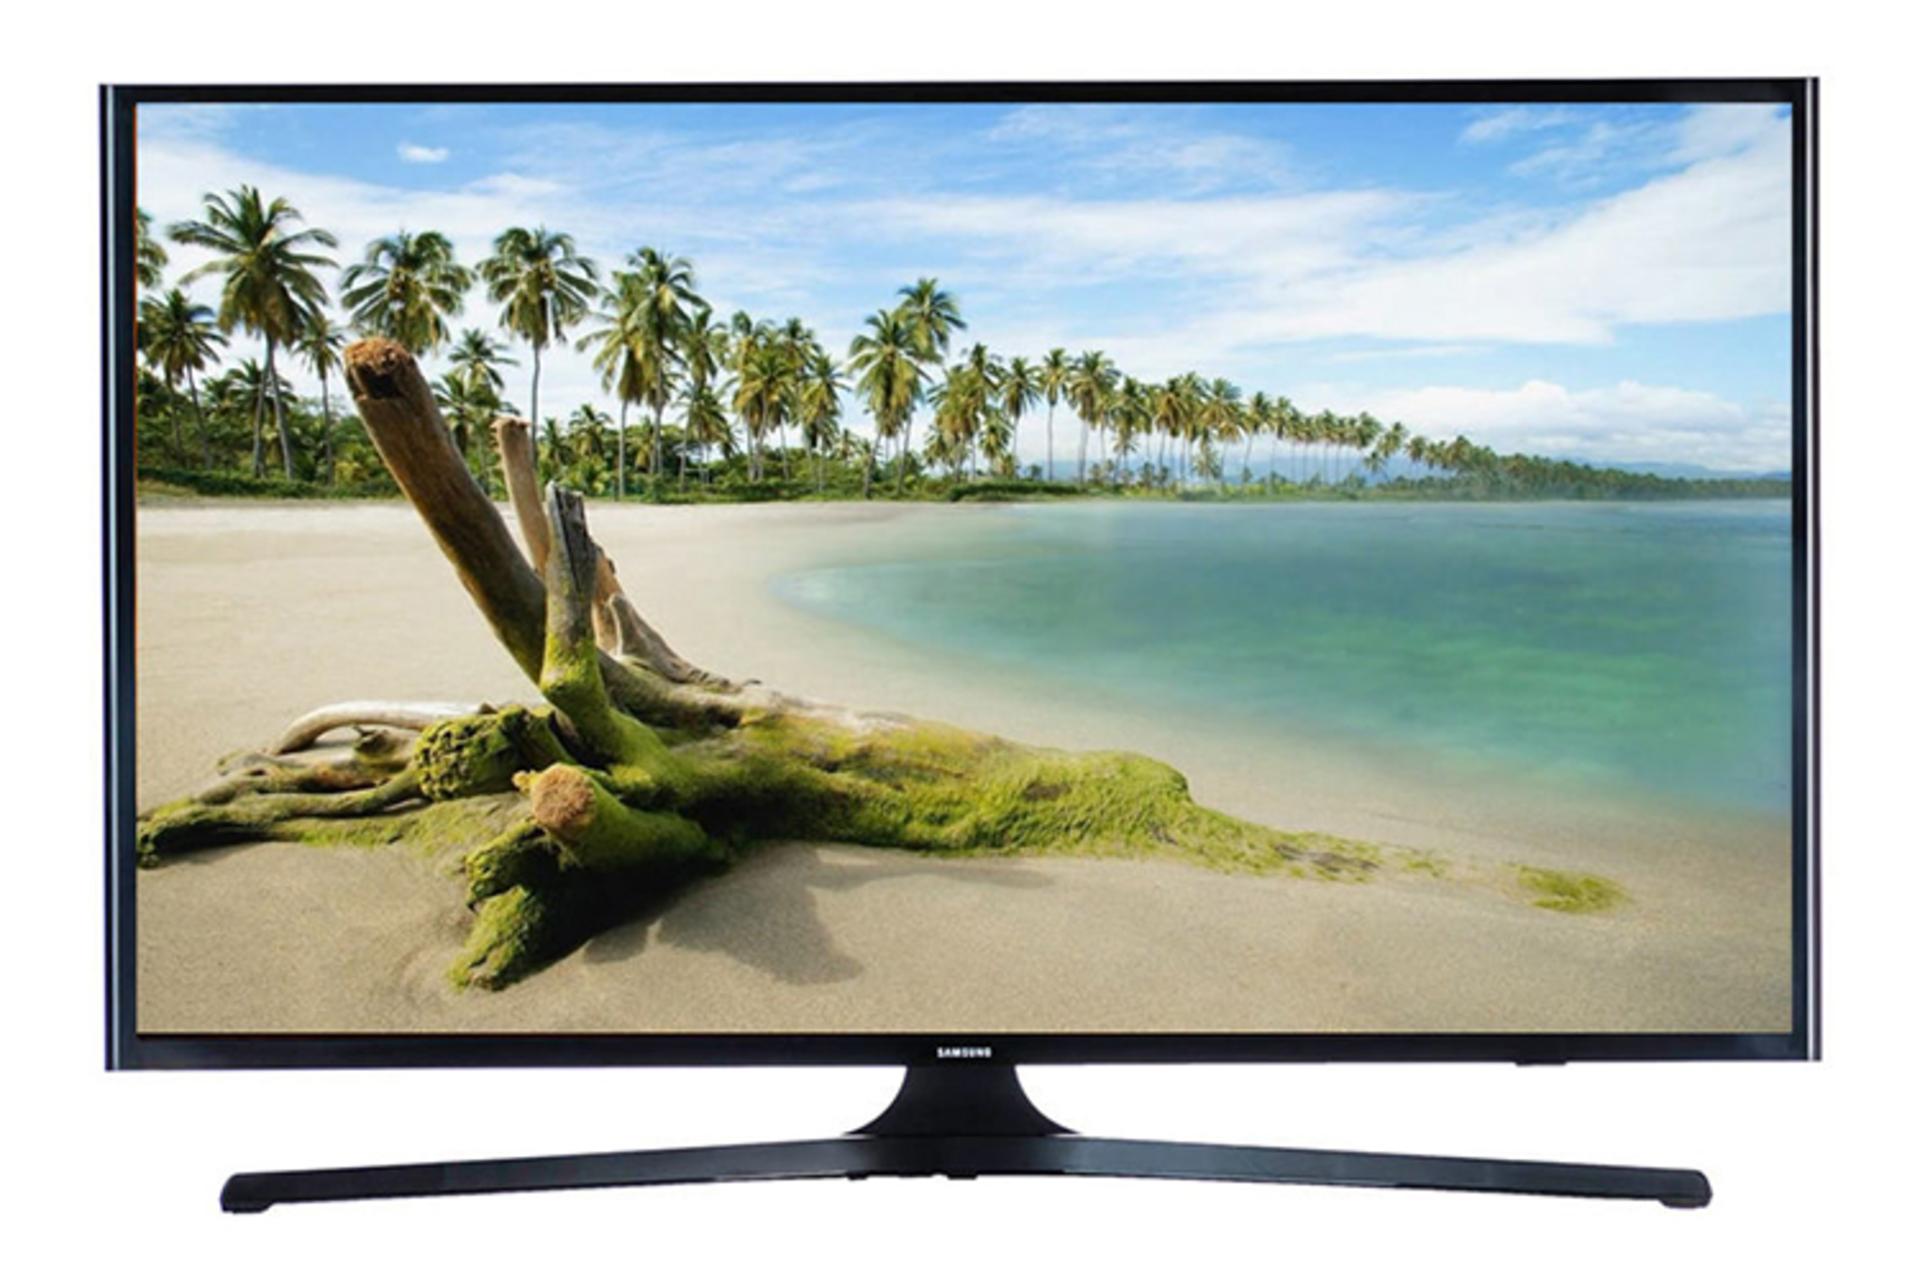 نمای جلو تلویزیون سامسونگ N5980 مدل 49 اینچ با صفحه روشن و پایه مرکزی U شکل